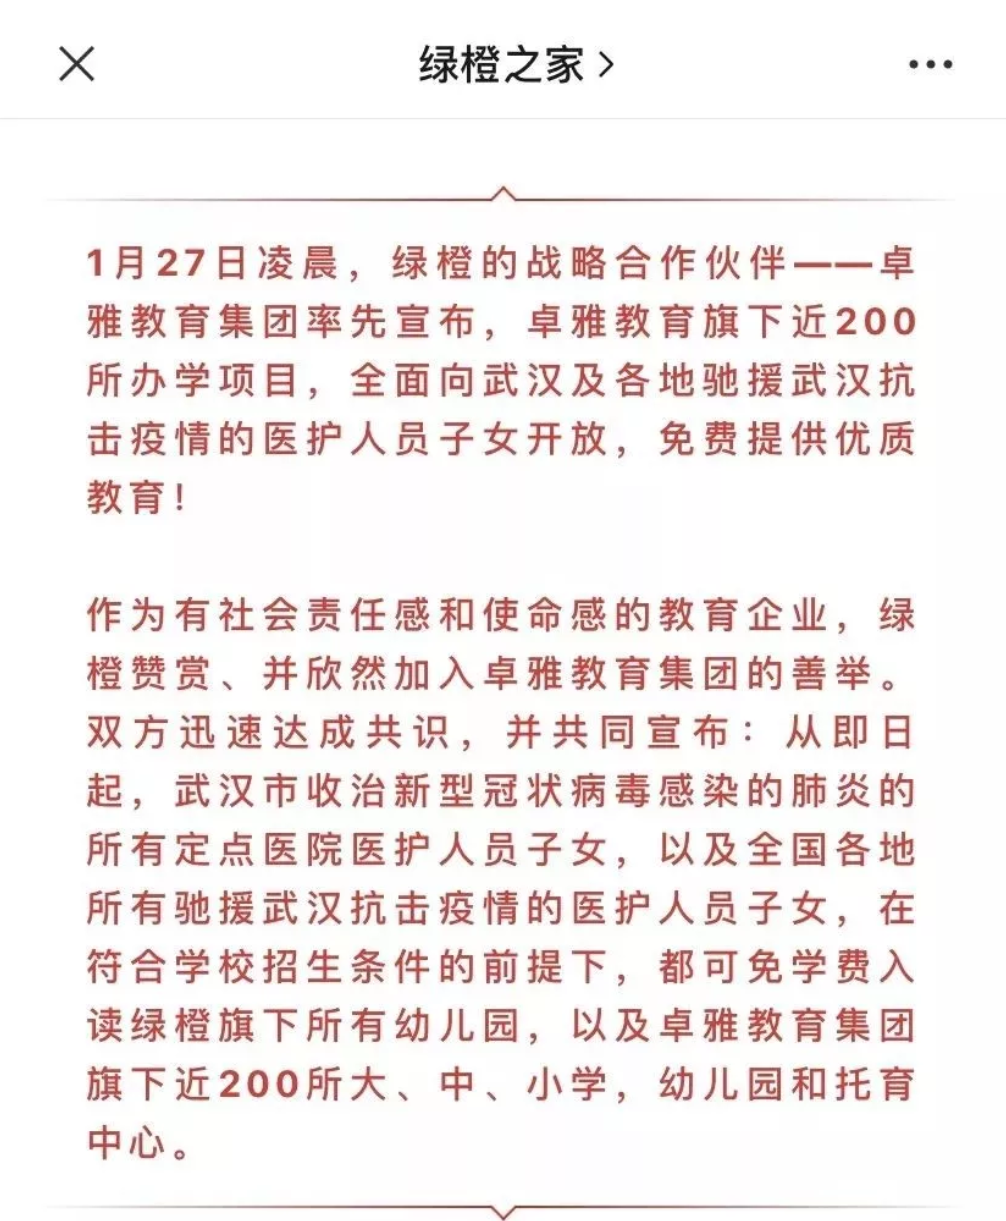 雅居乐八大产业协同作战 联防联控“五步走” -中国网地产